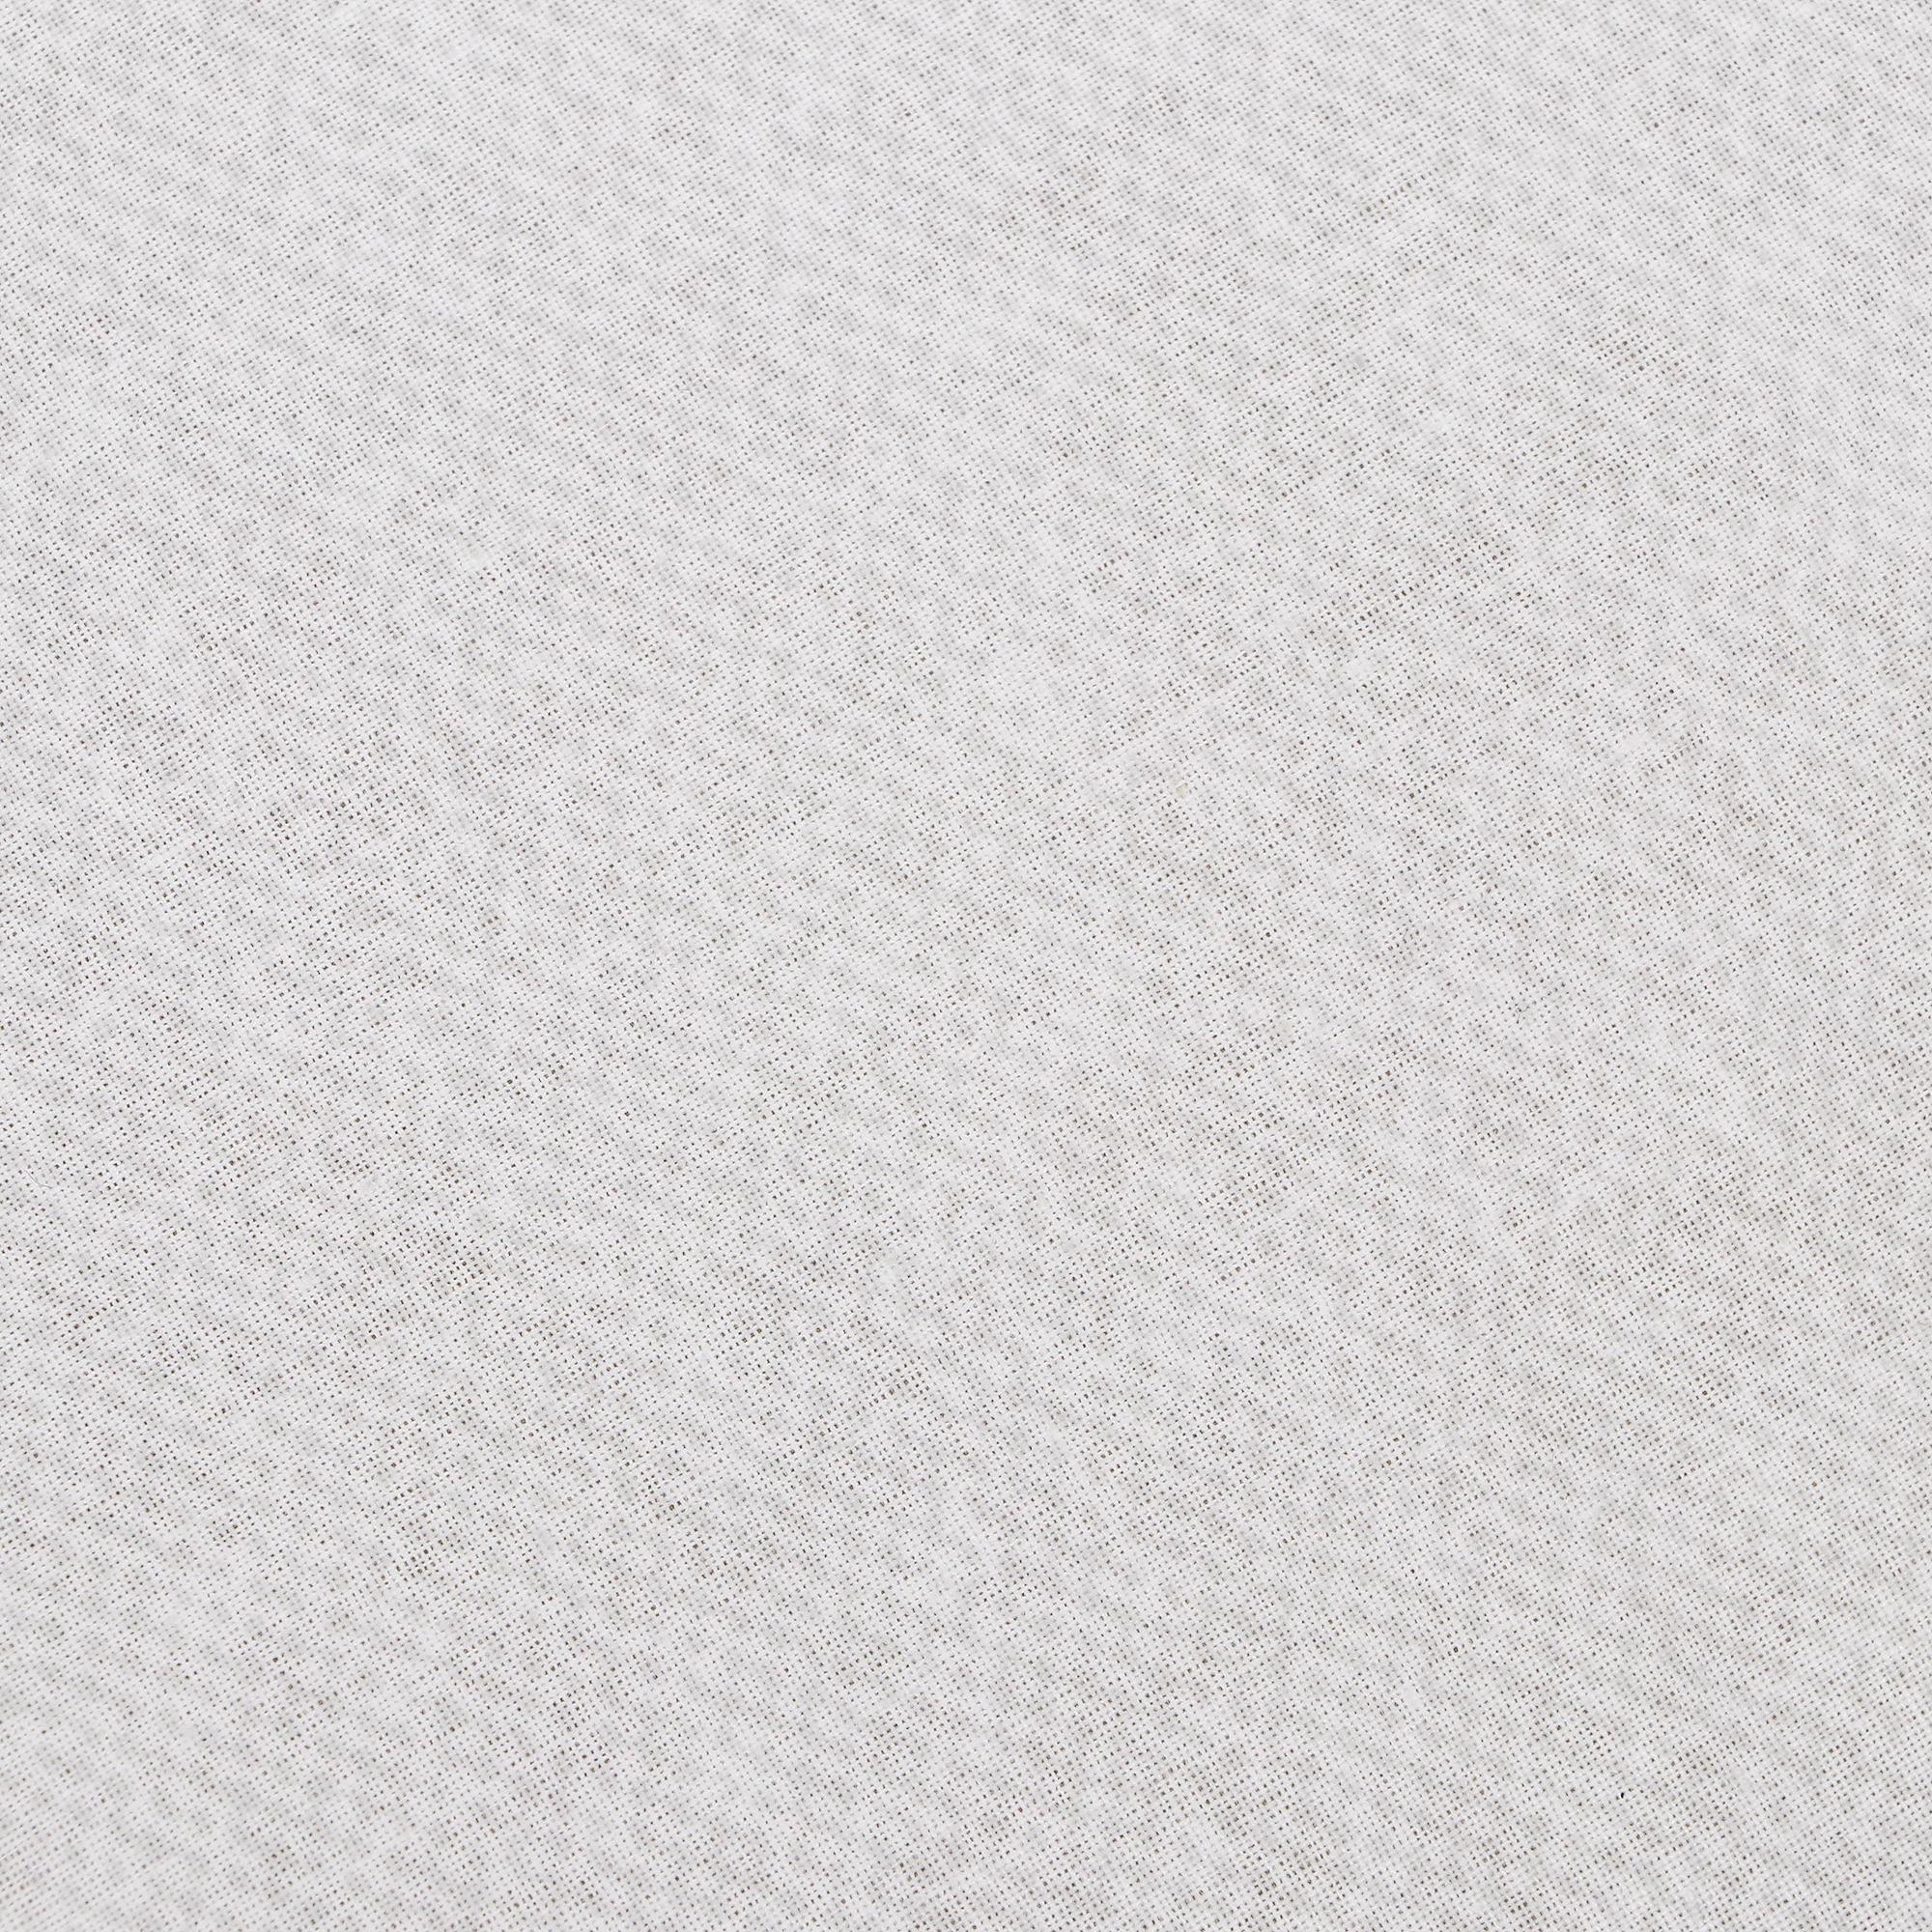 Одеяло Medsleep Himalayas белое 140х200 см, цвет белый - фото 2